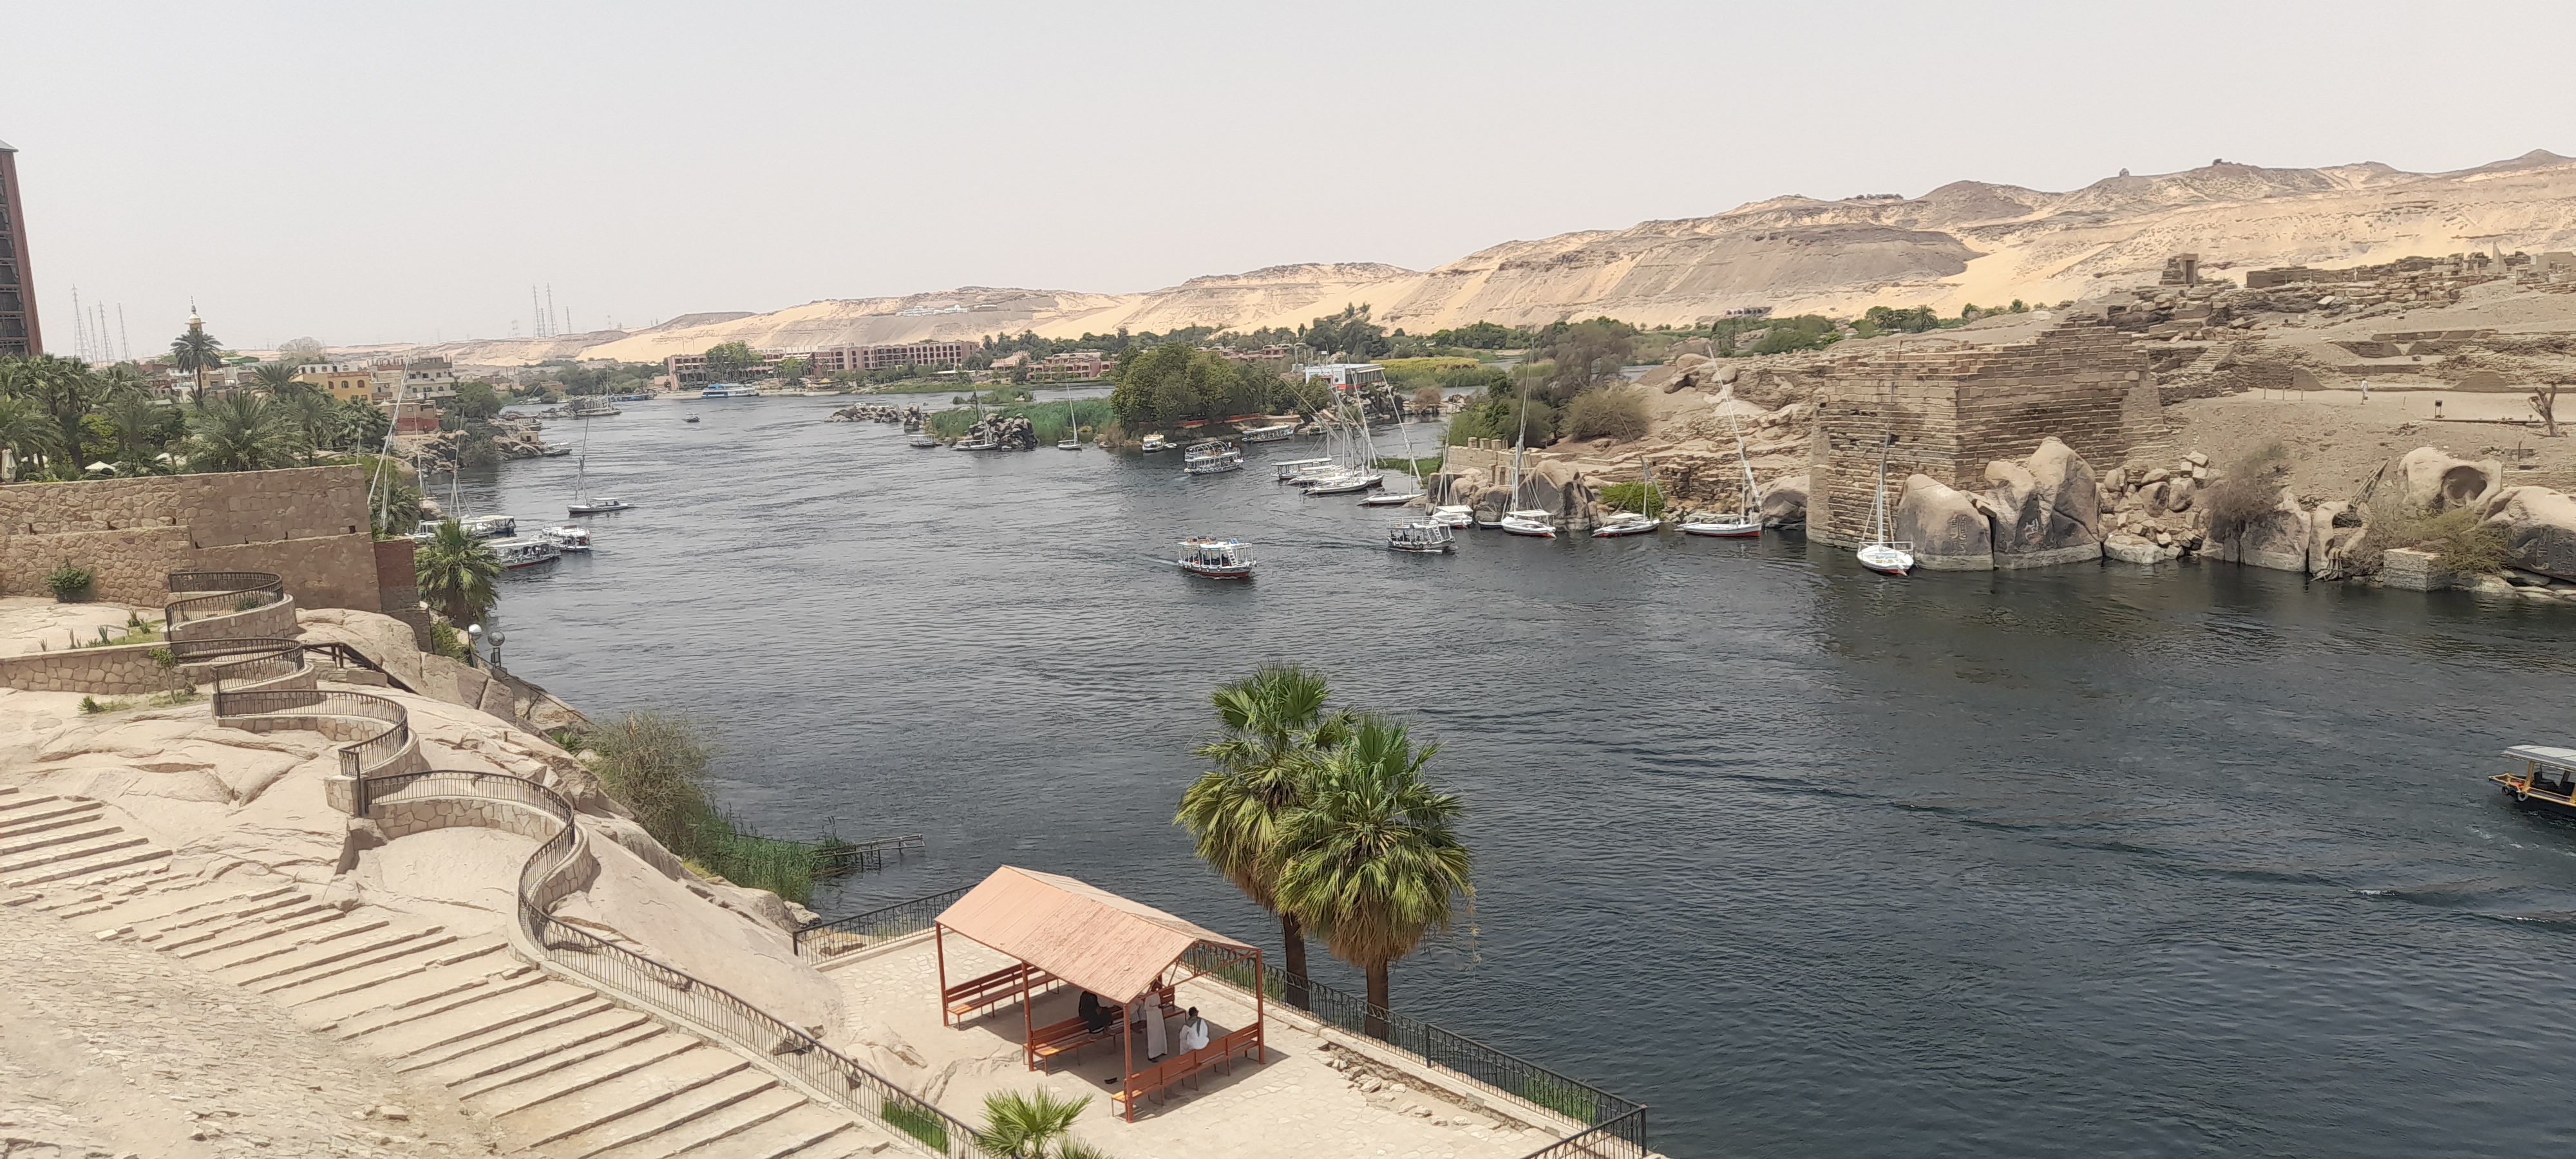 إطلالة مميزة على النيل من حديقة الأميرة فريال بمحافظة أسوان (4)